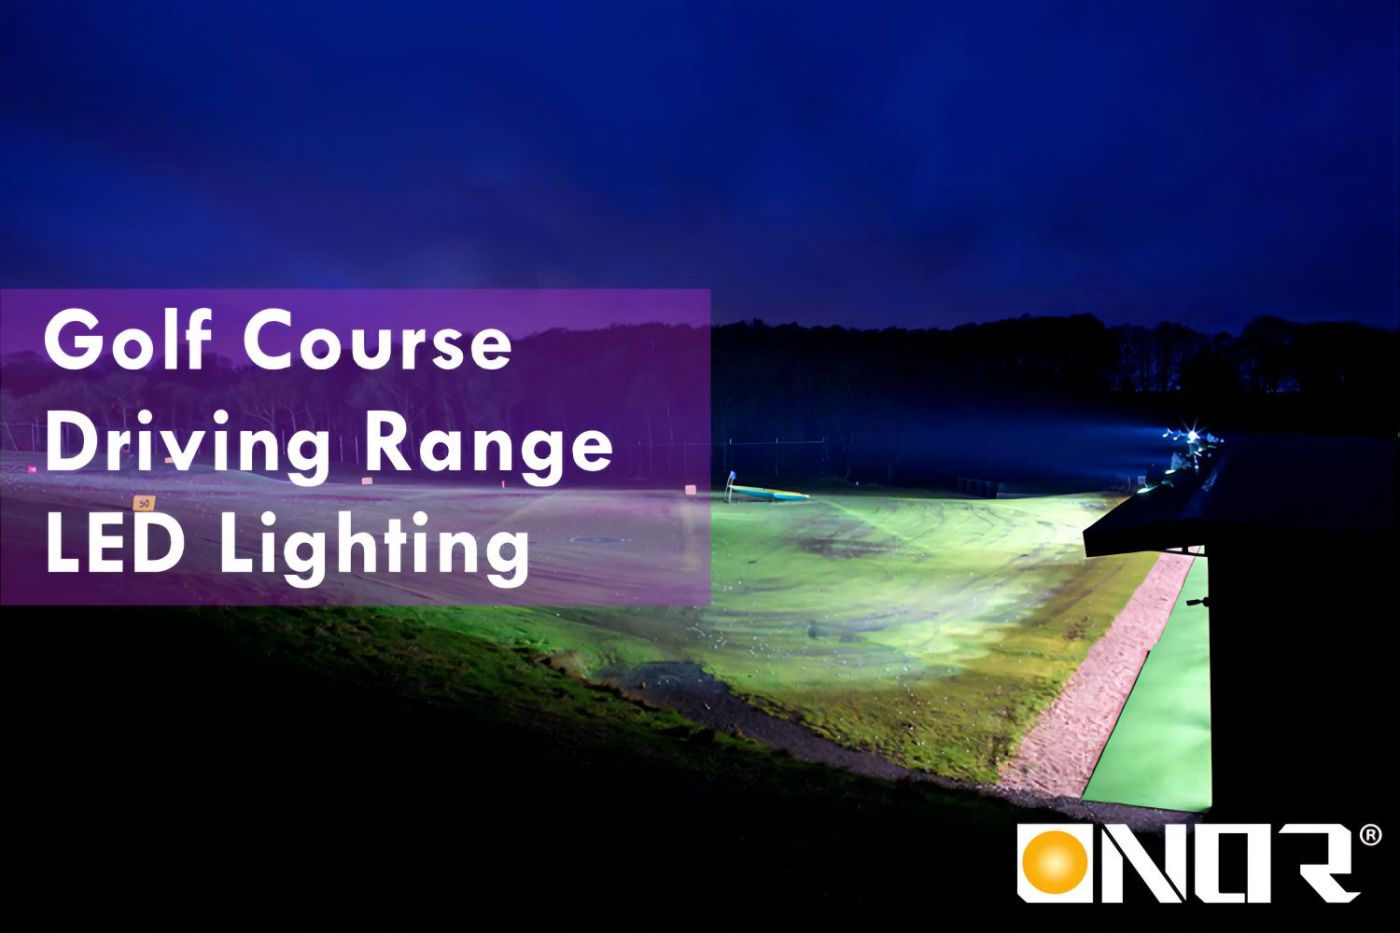 Anleitung zur LED-Golfplatzbeleuchtung 2